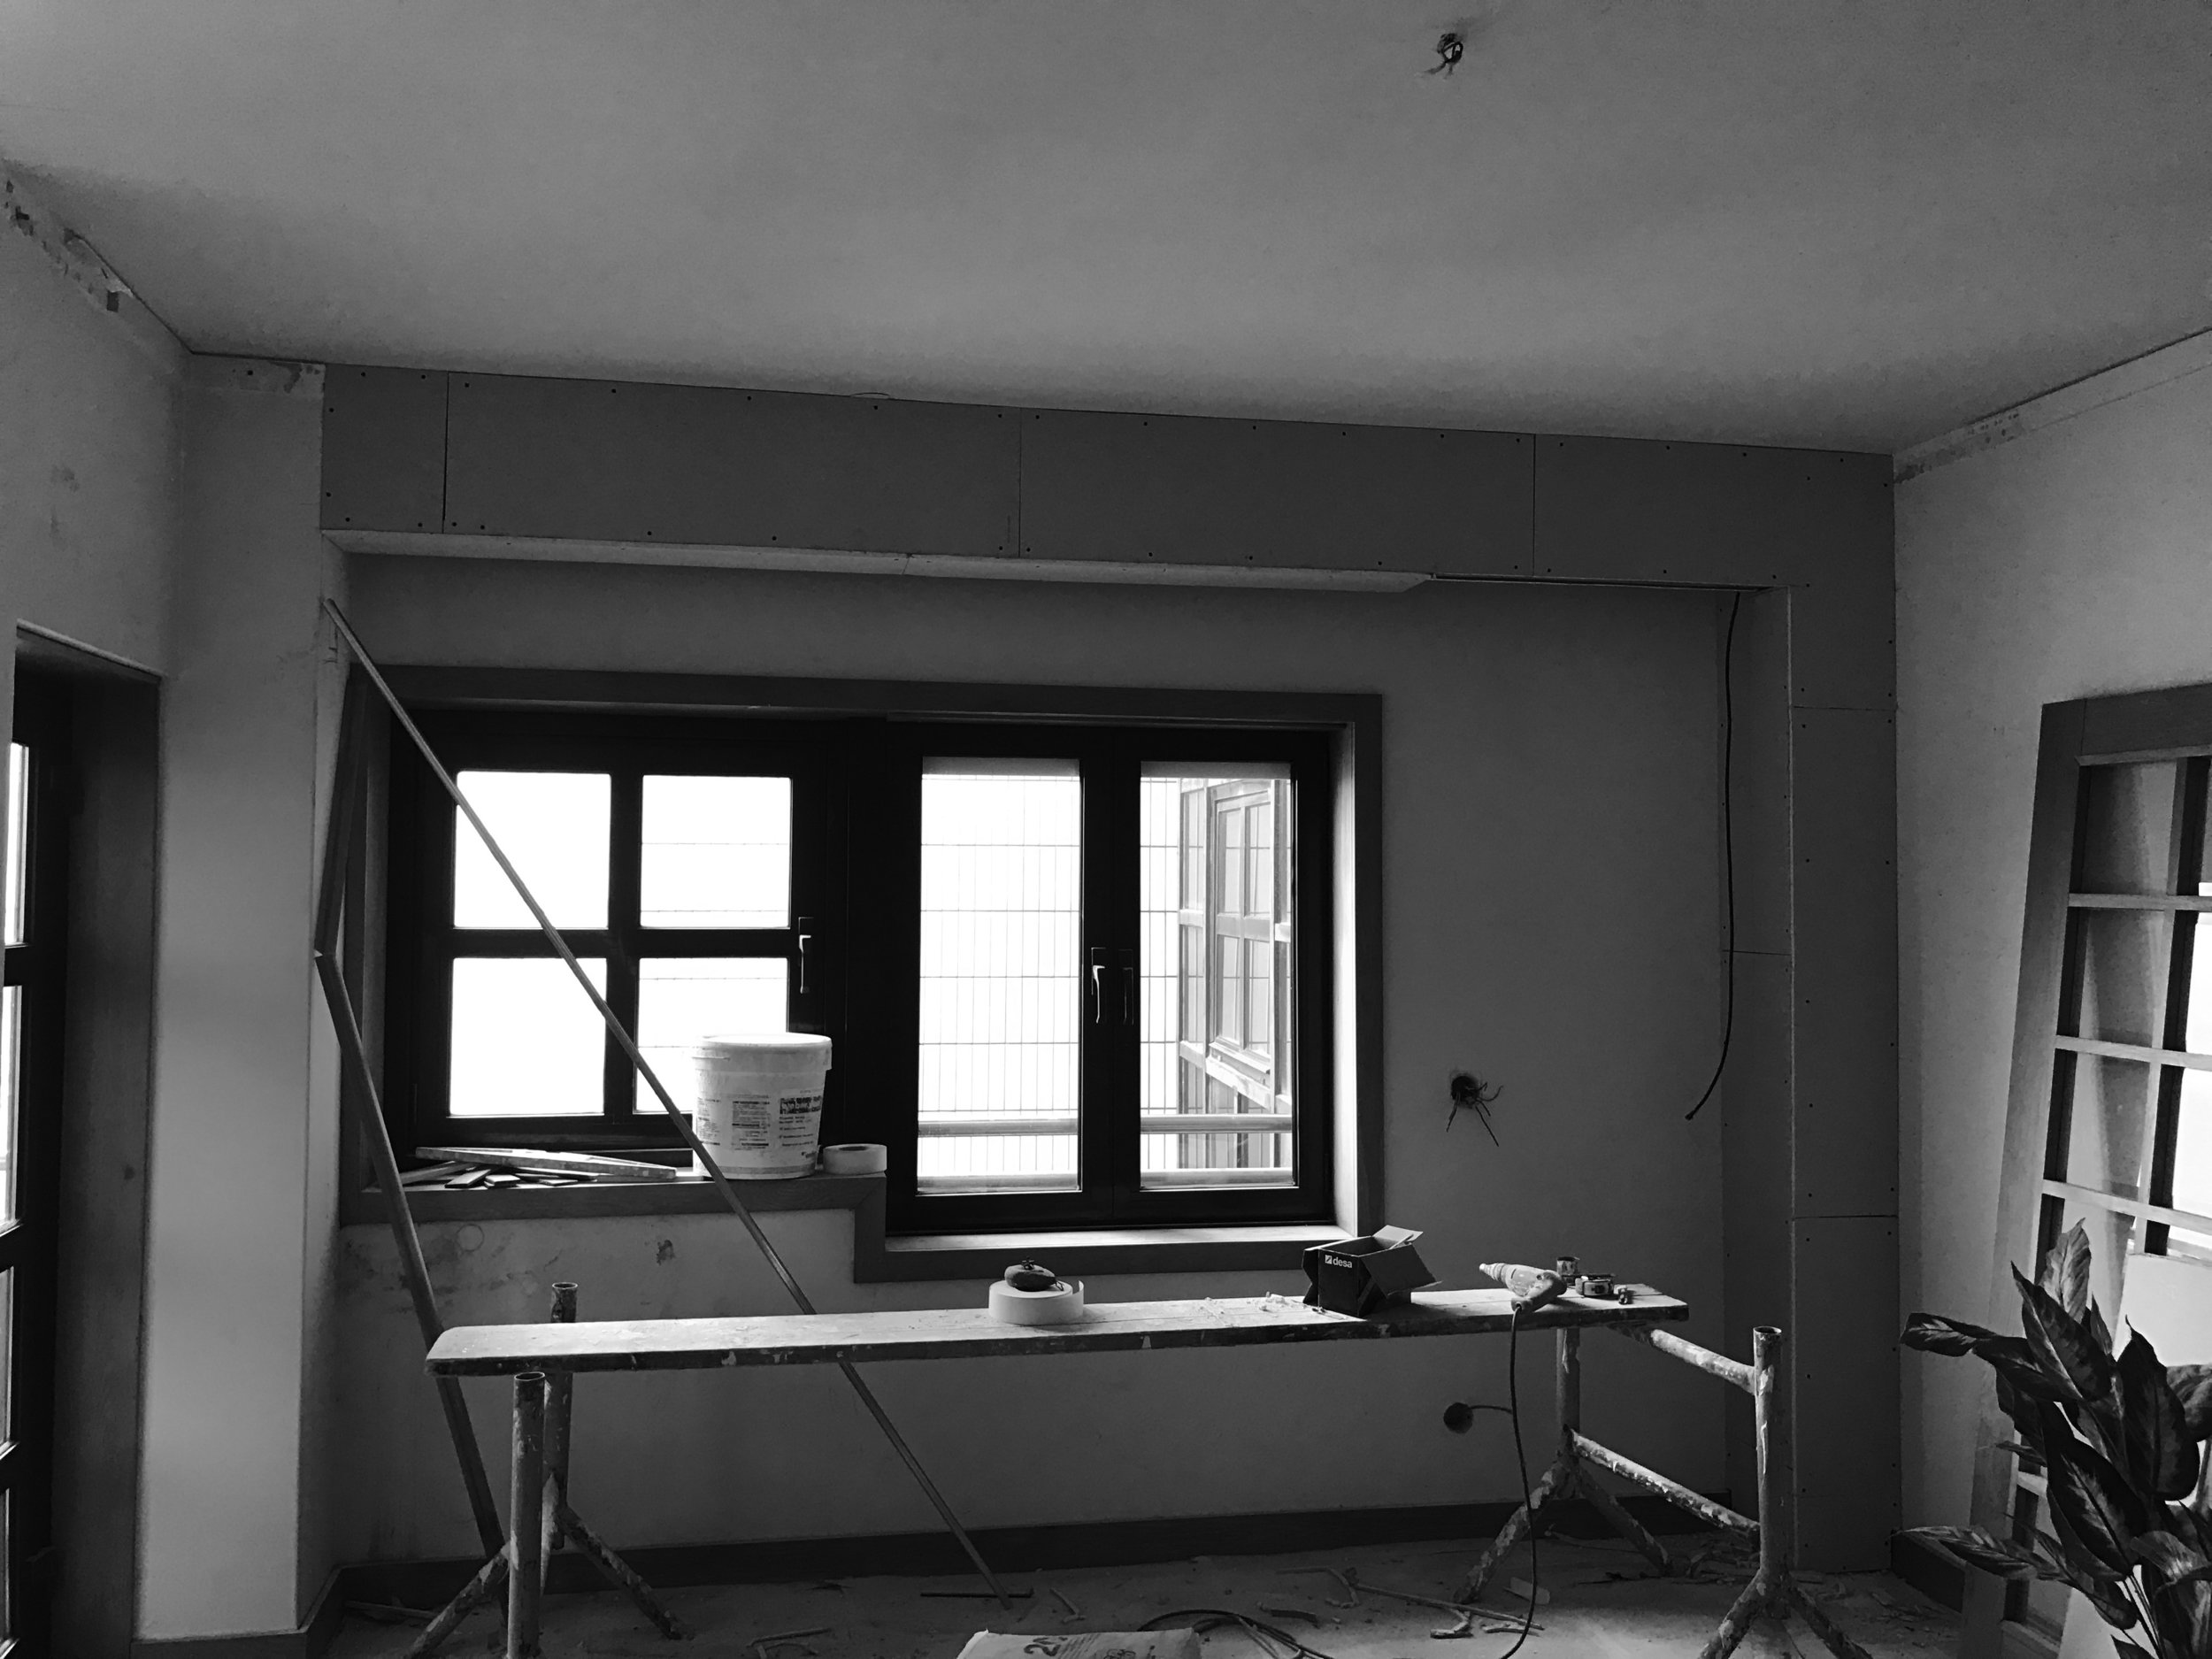 Apartamento Azul Farol - Porto - EVA evolutionary architecture - EVA atelier - Arquitecto - Remodelação (21).jpg